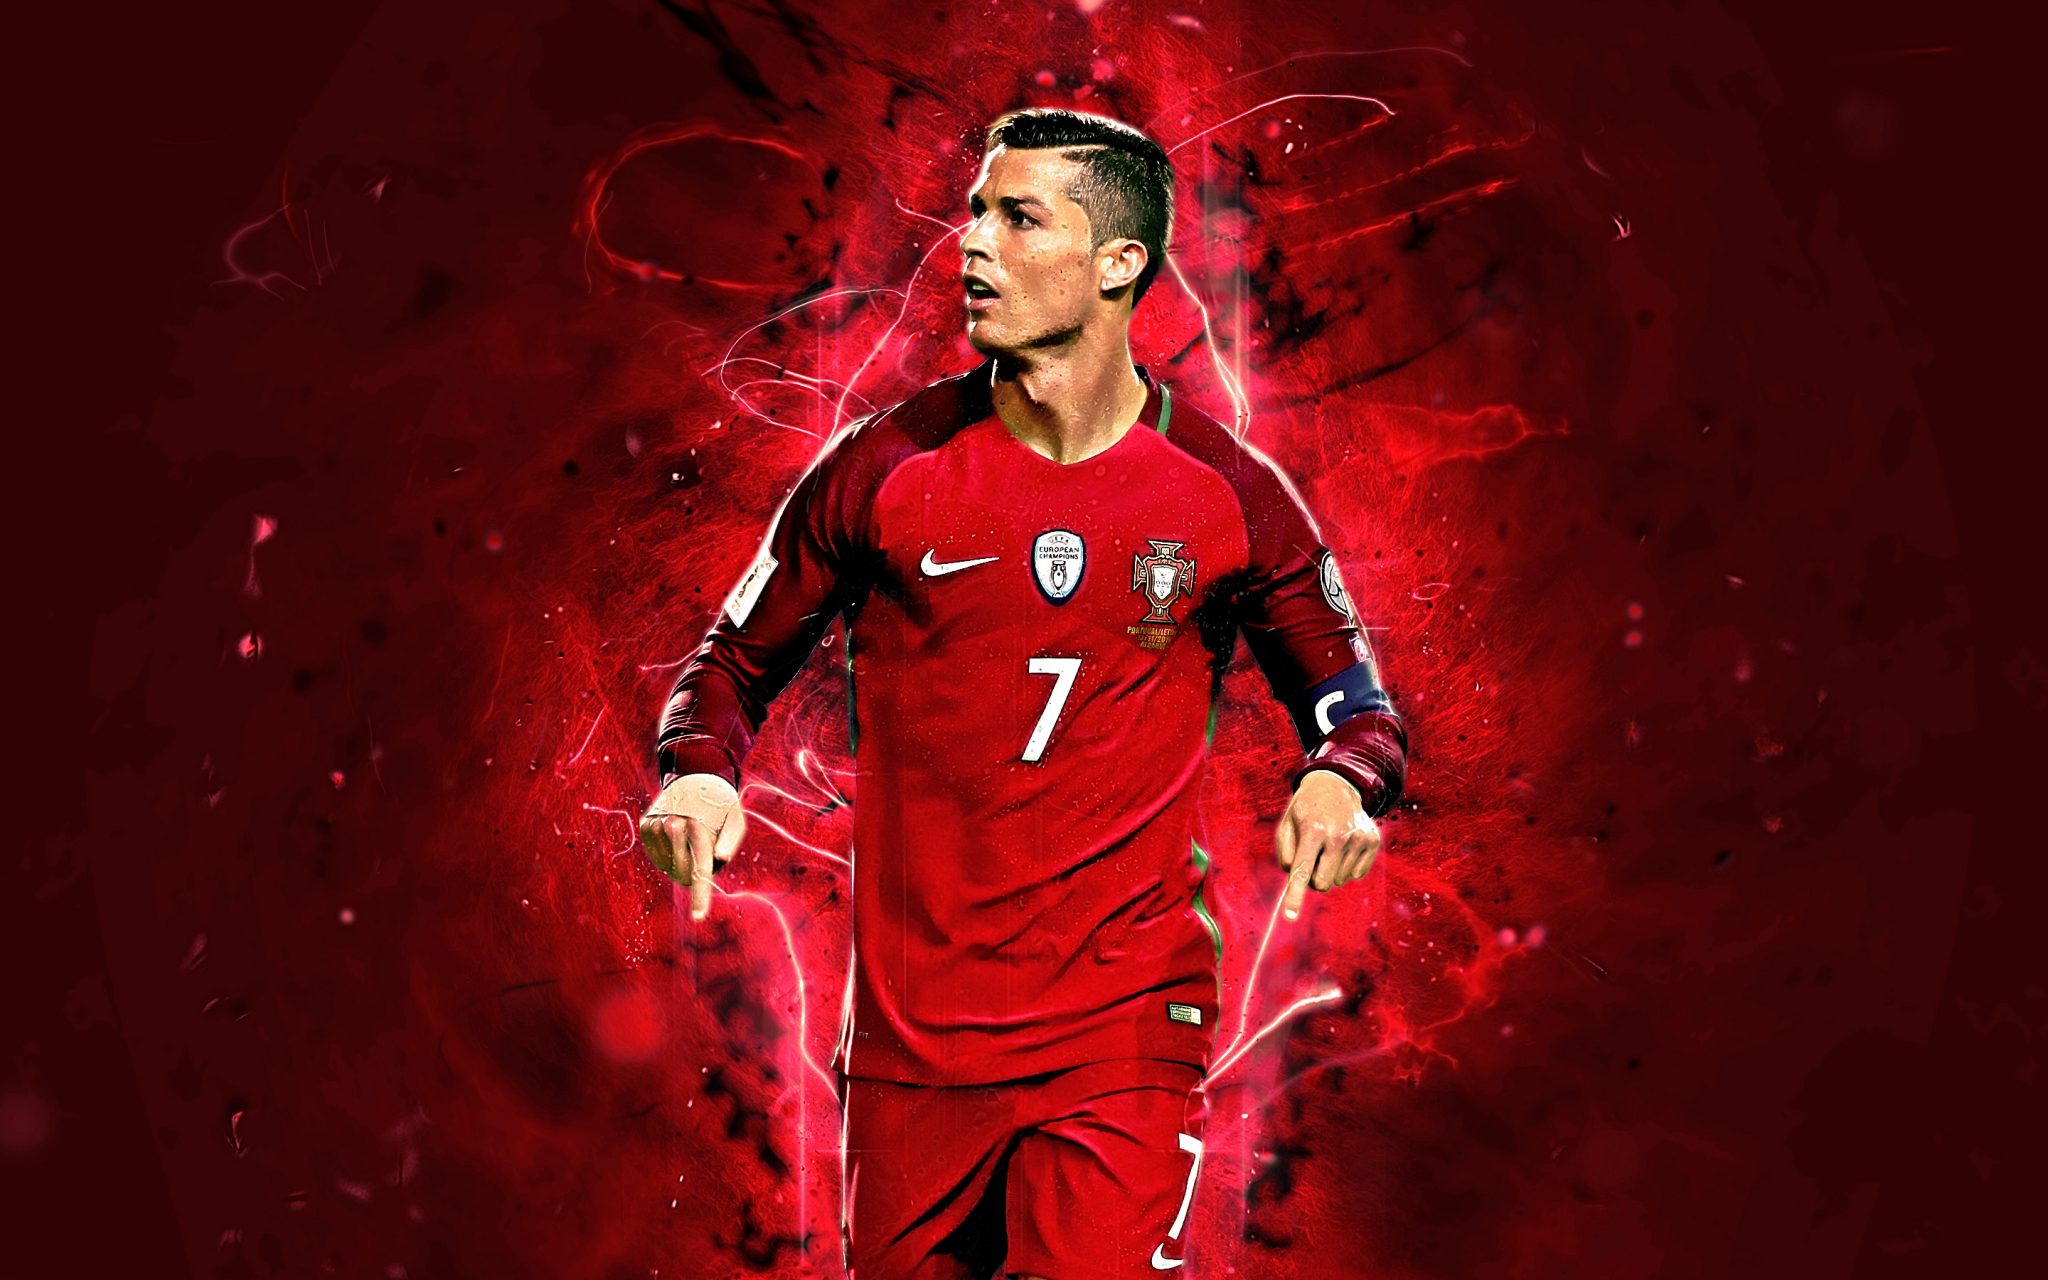 Chia sẻ 100 hình nền đẹp của Cristiano Ronaldo full HD   thptlamnghiepeduvn